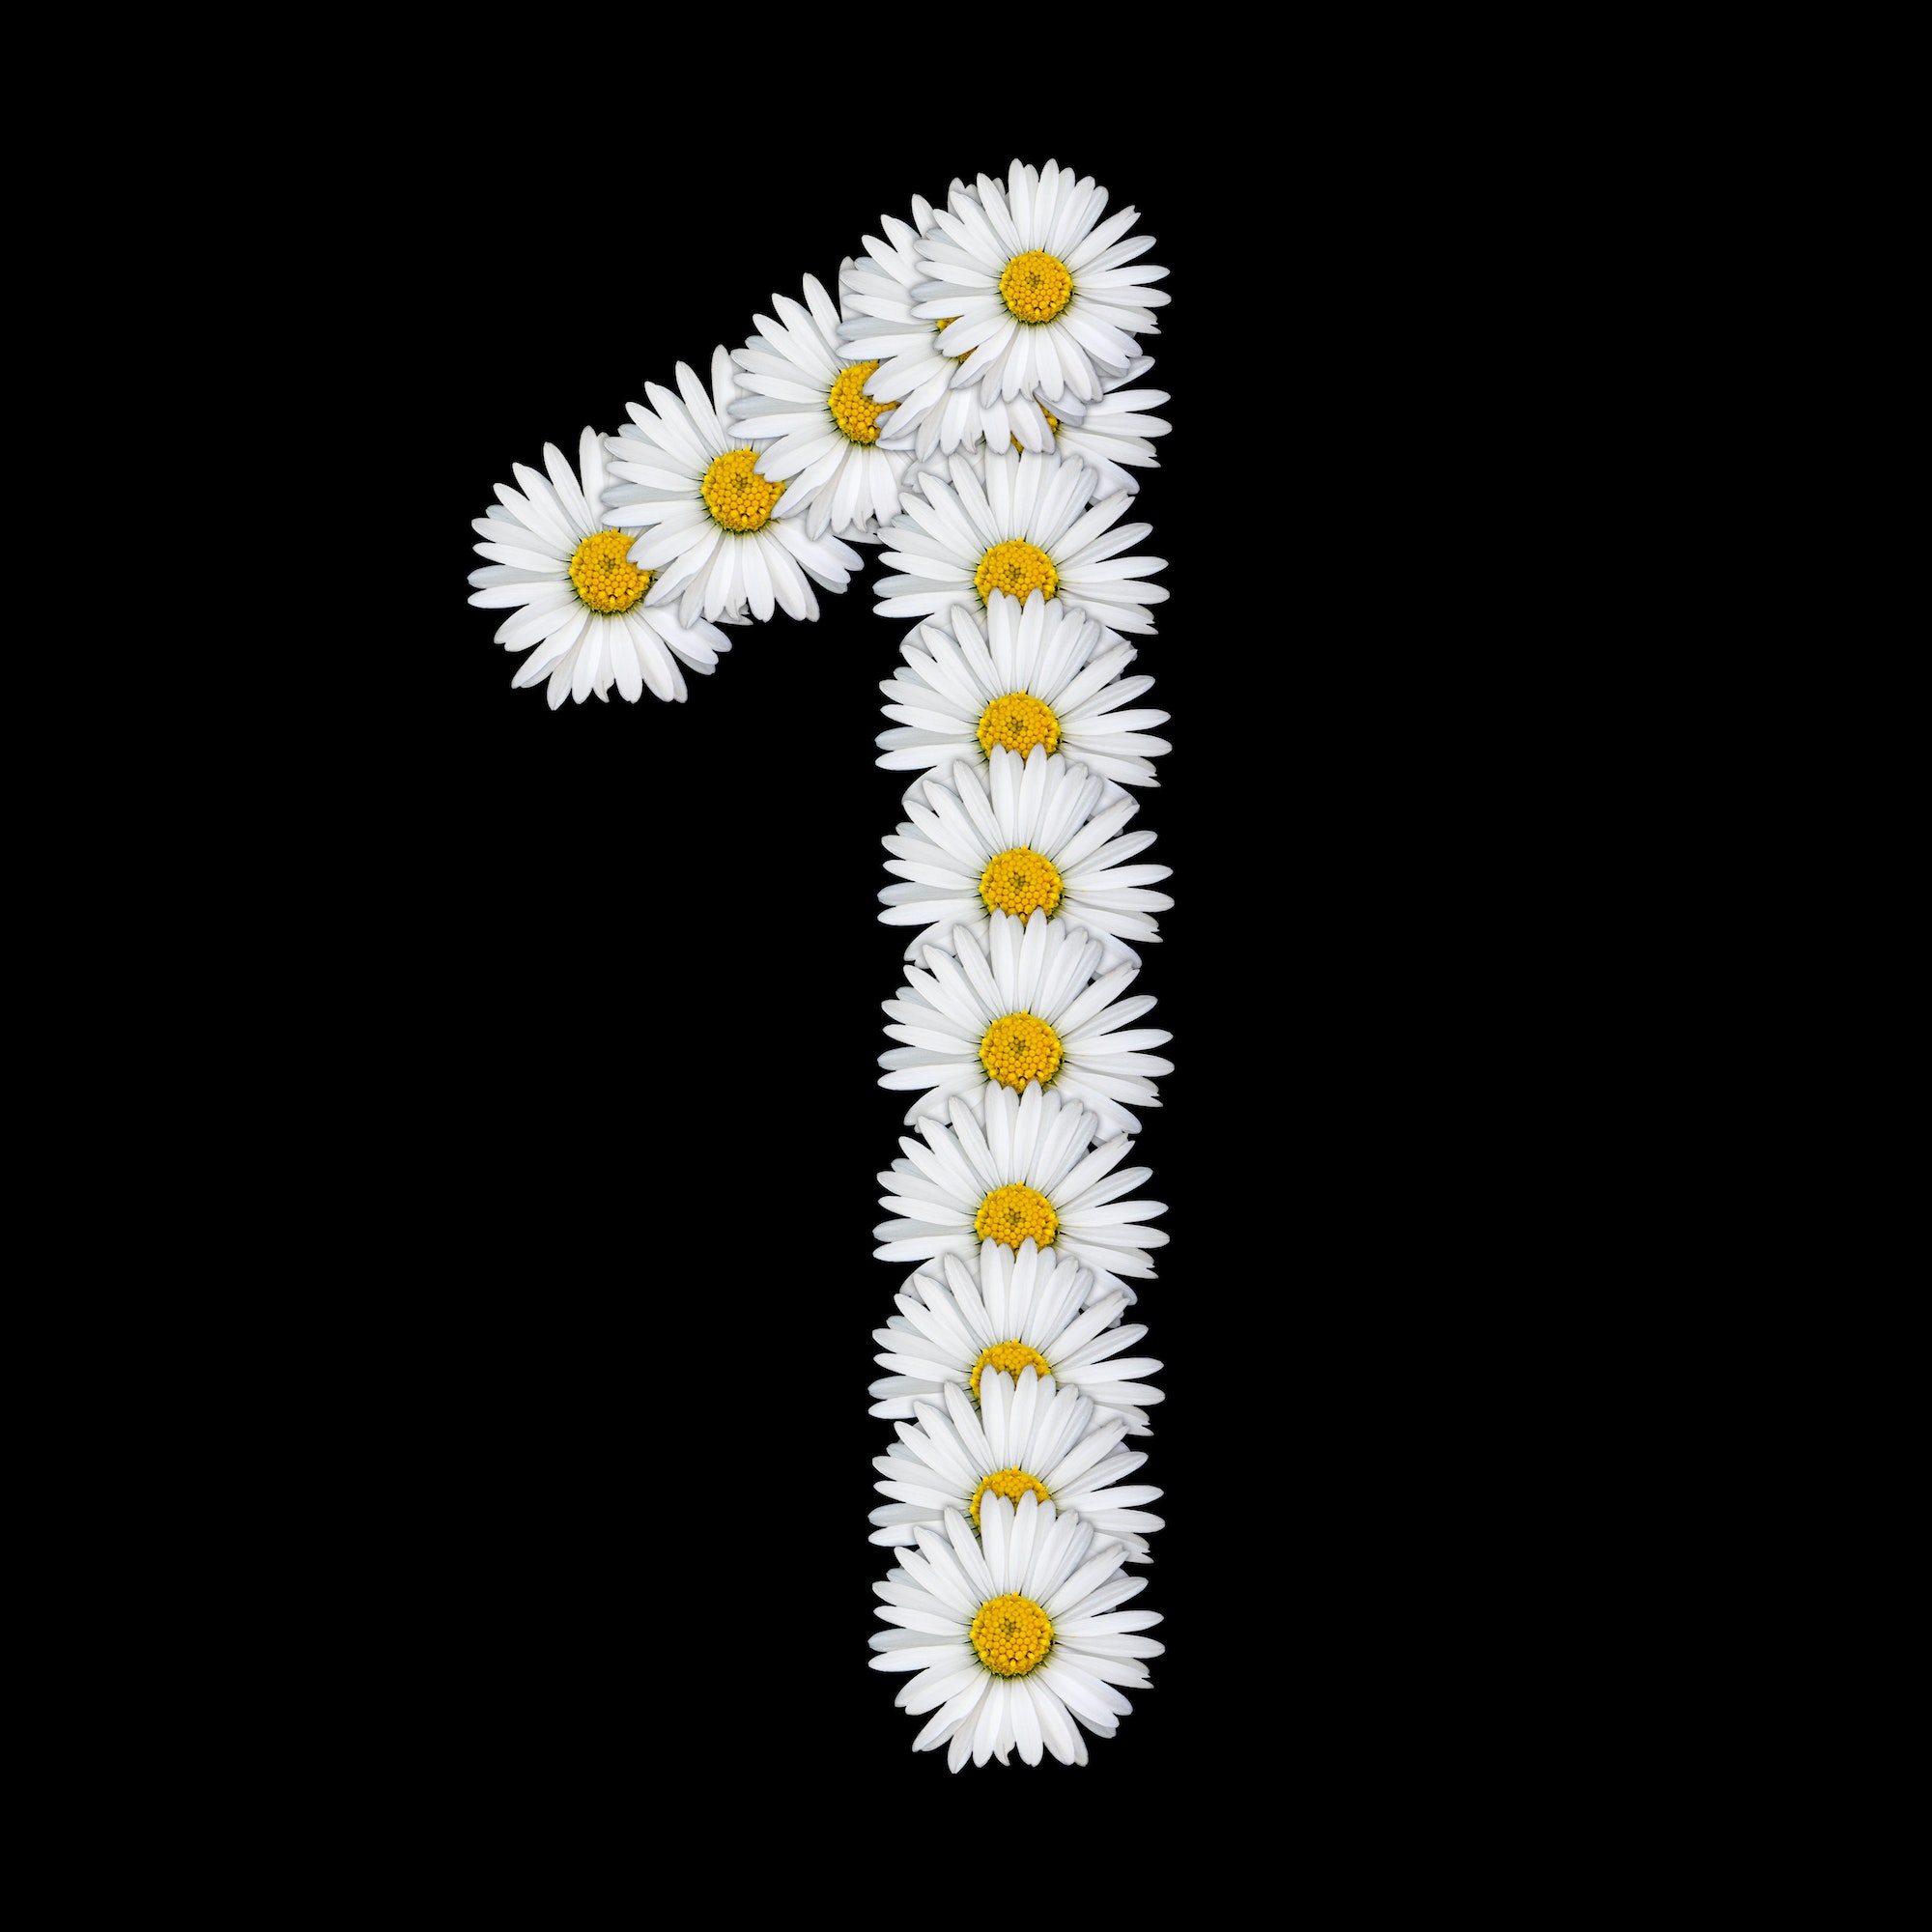 Flower number